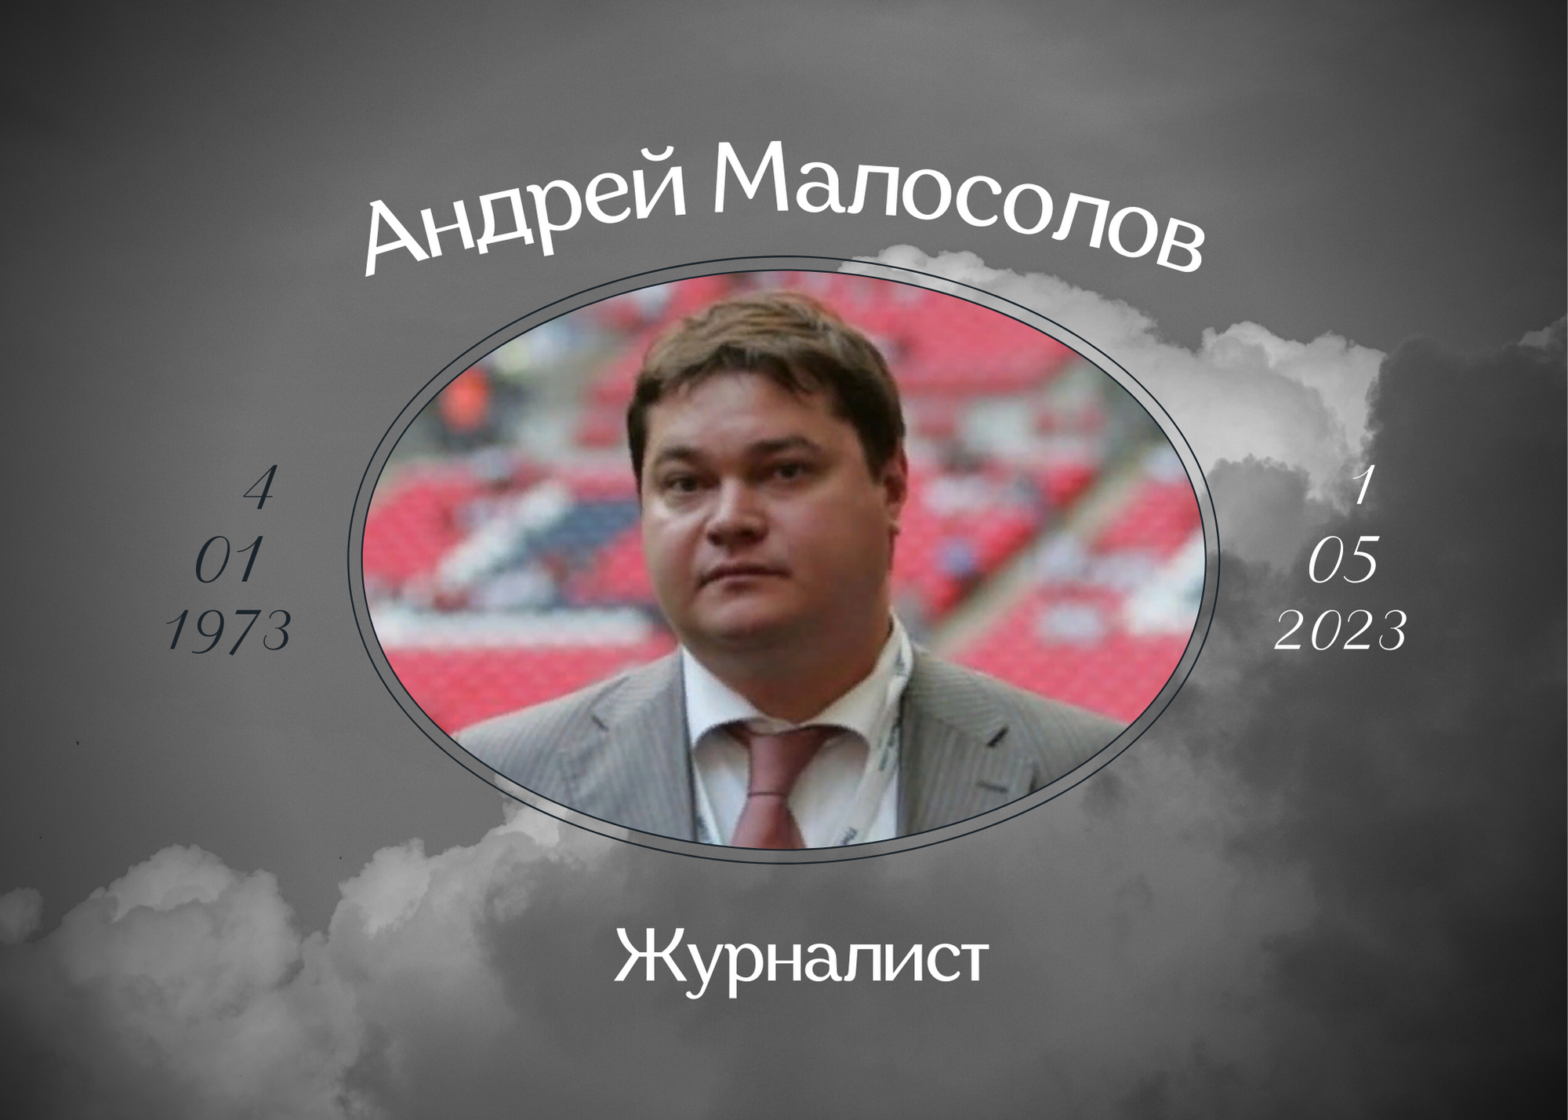 Умер спортивный журналист Андрей Малосолов